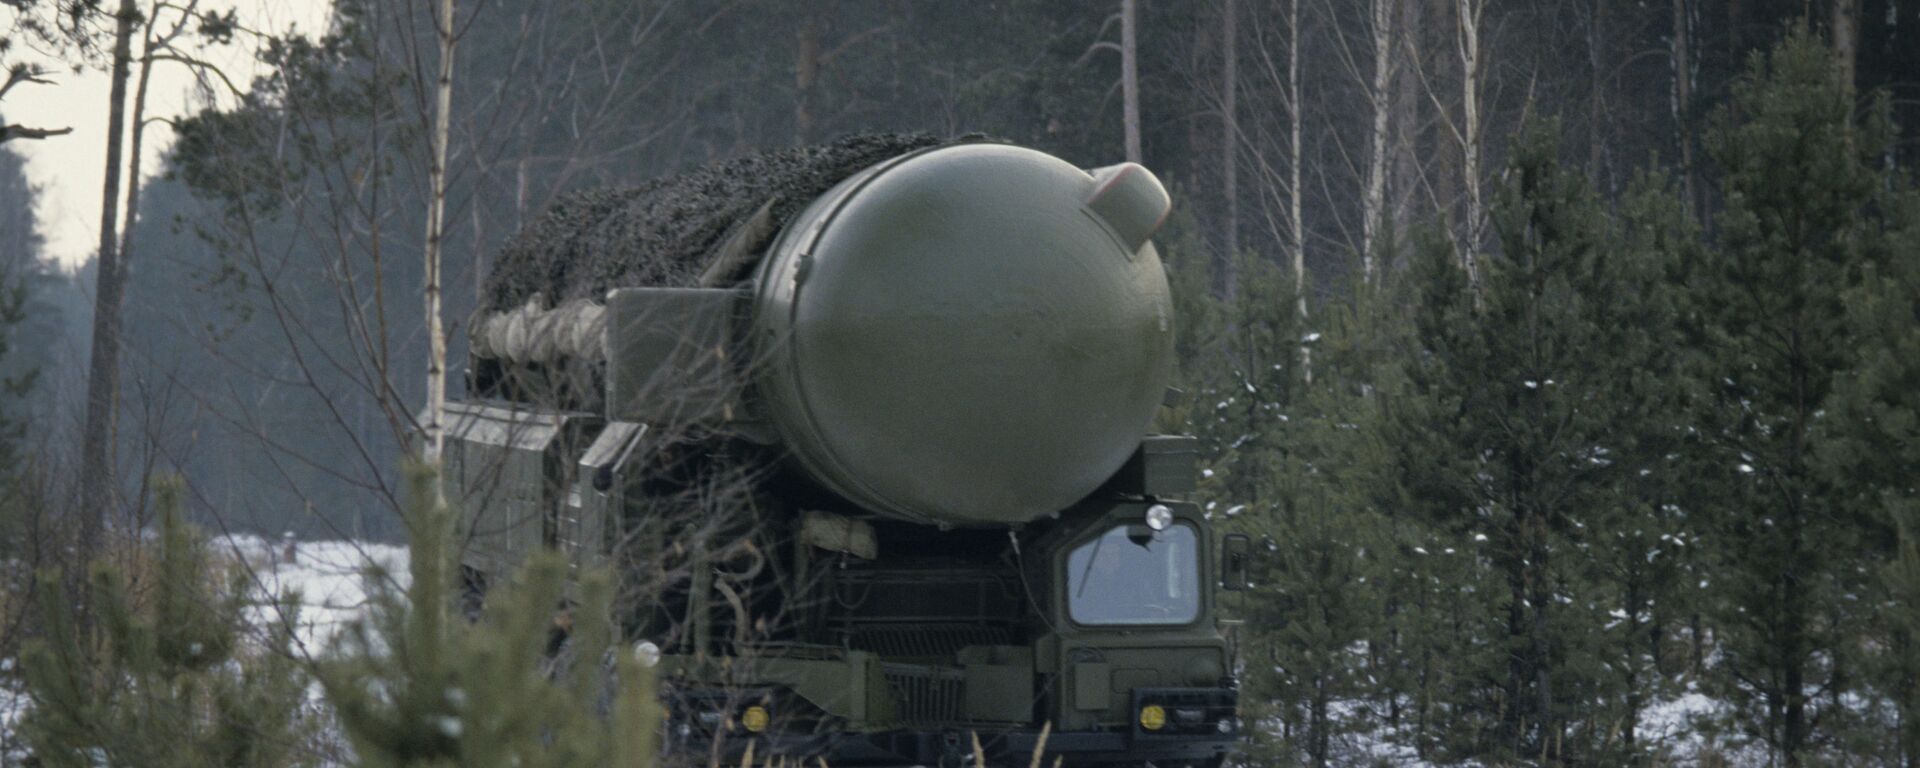 Самоходные ракетные установки РСД-10 (СС-20), дислоцированные на оперативной ракетной базе в районе города Речица, были ликвидированы в соответствии с Договором между СССР и США - Sputnik Беларусь, 1920, 04.08.2020